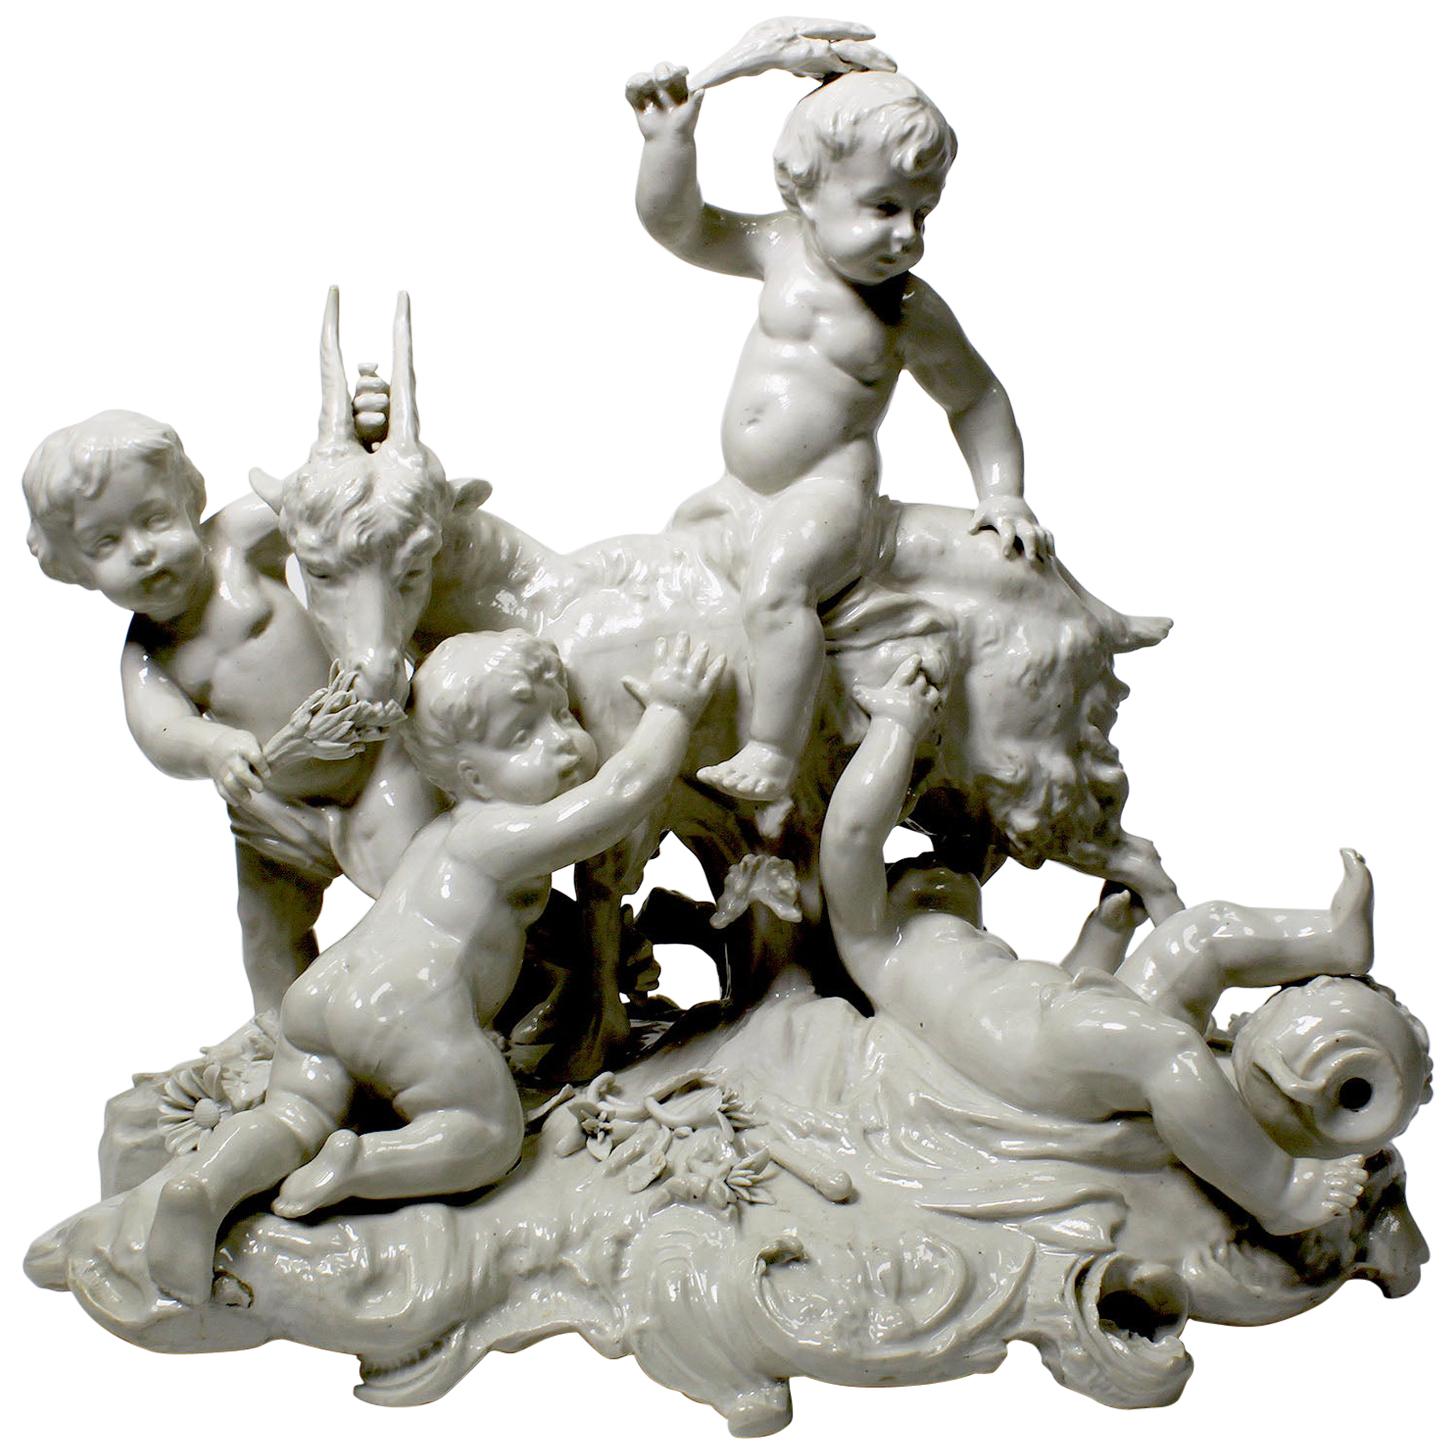 Skurrile weiß glasierte Porzellangruppe mit vier Kindern, die mit einer Ziege spielen